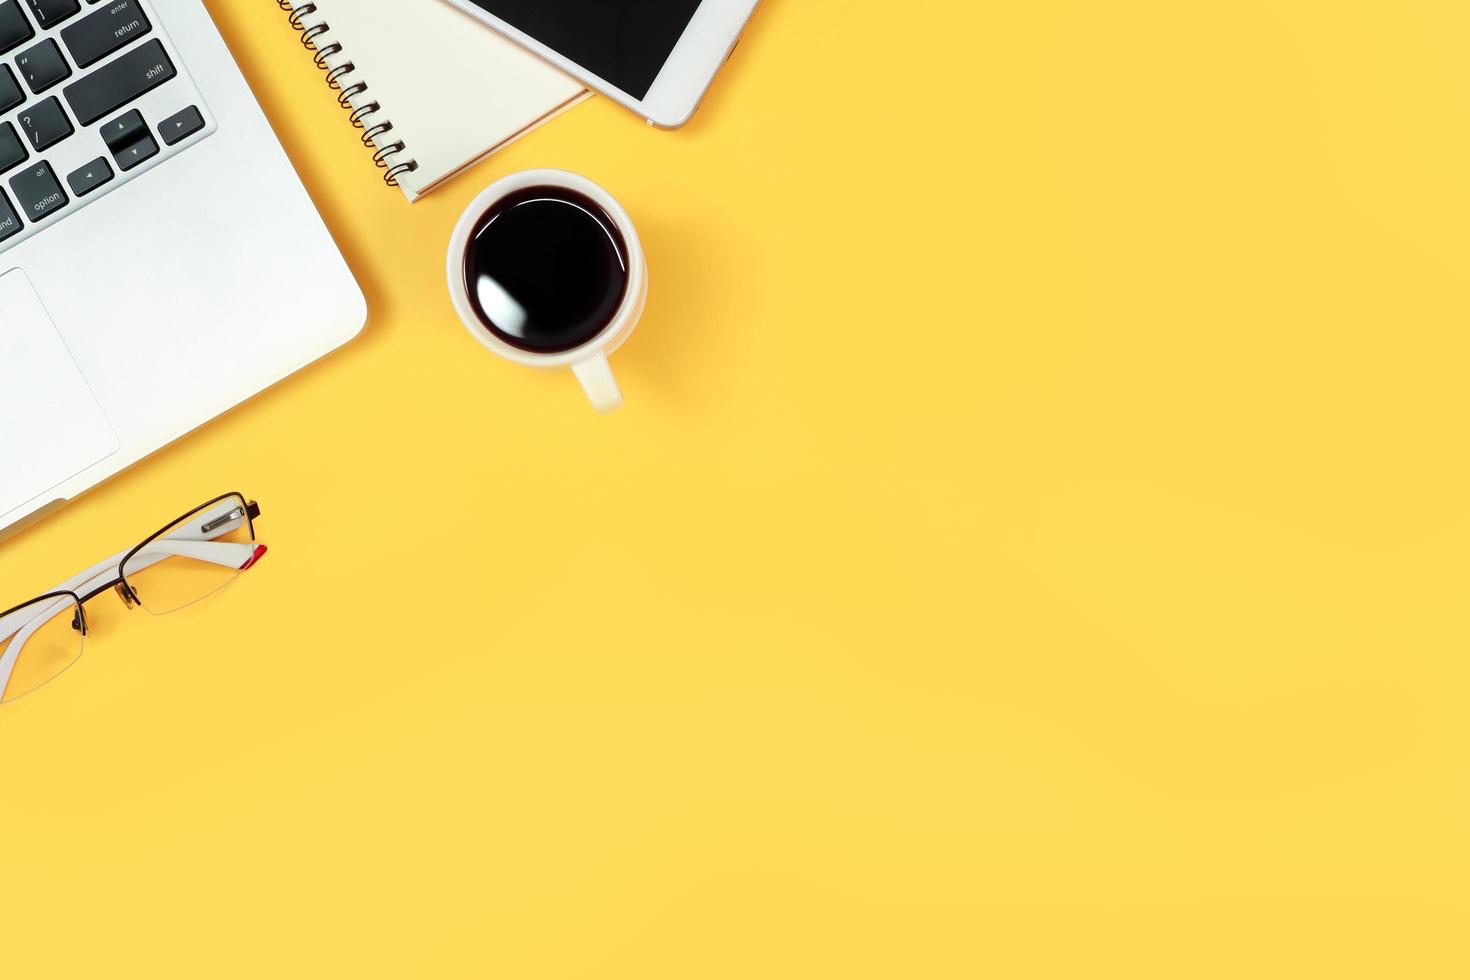 table d'espace de travail avec ordinateur portable, fournitures de bureau, tasse à café, téléphone portable et tasse à café sur fond jaune photo